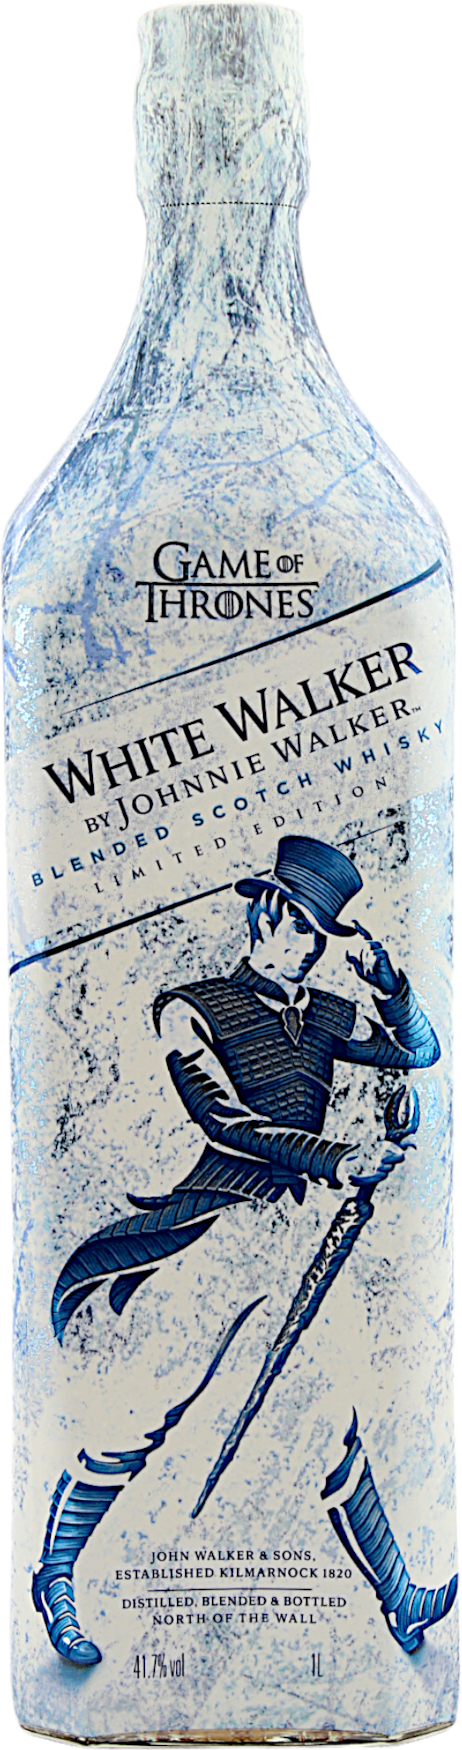 Johnnie Walker White Walker - Game of Thrones 41.7% 1 Liter